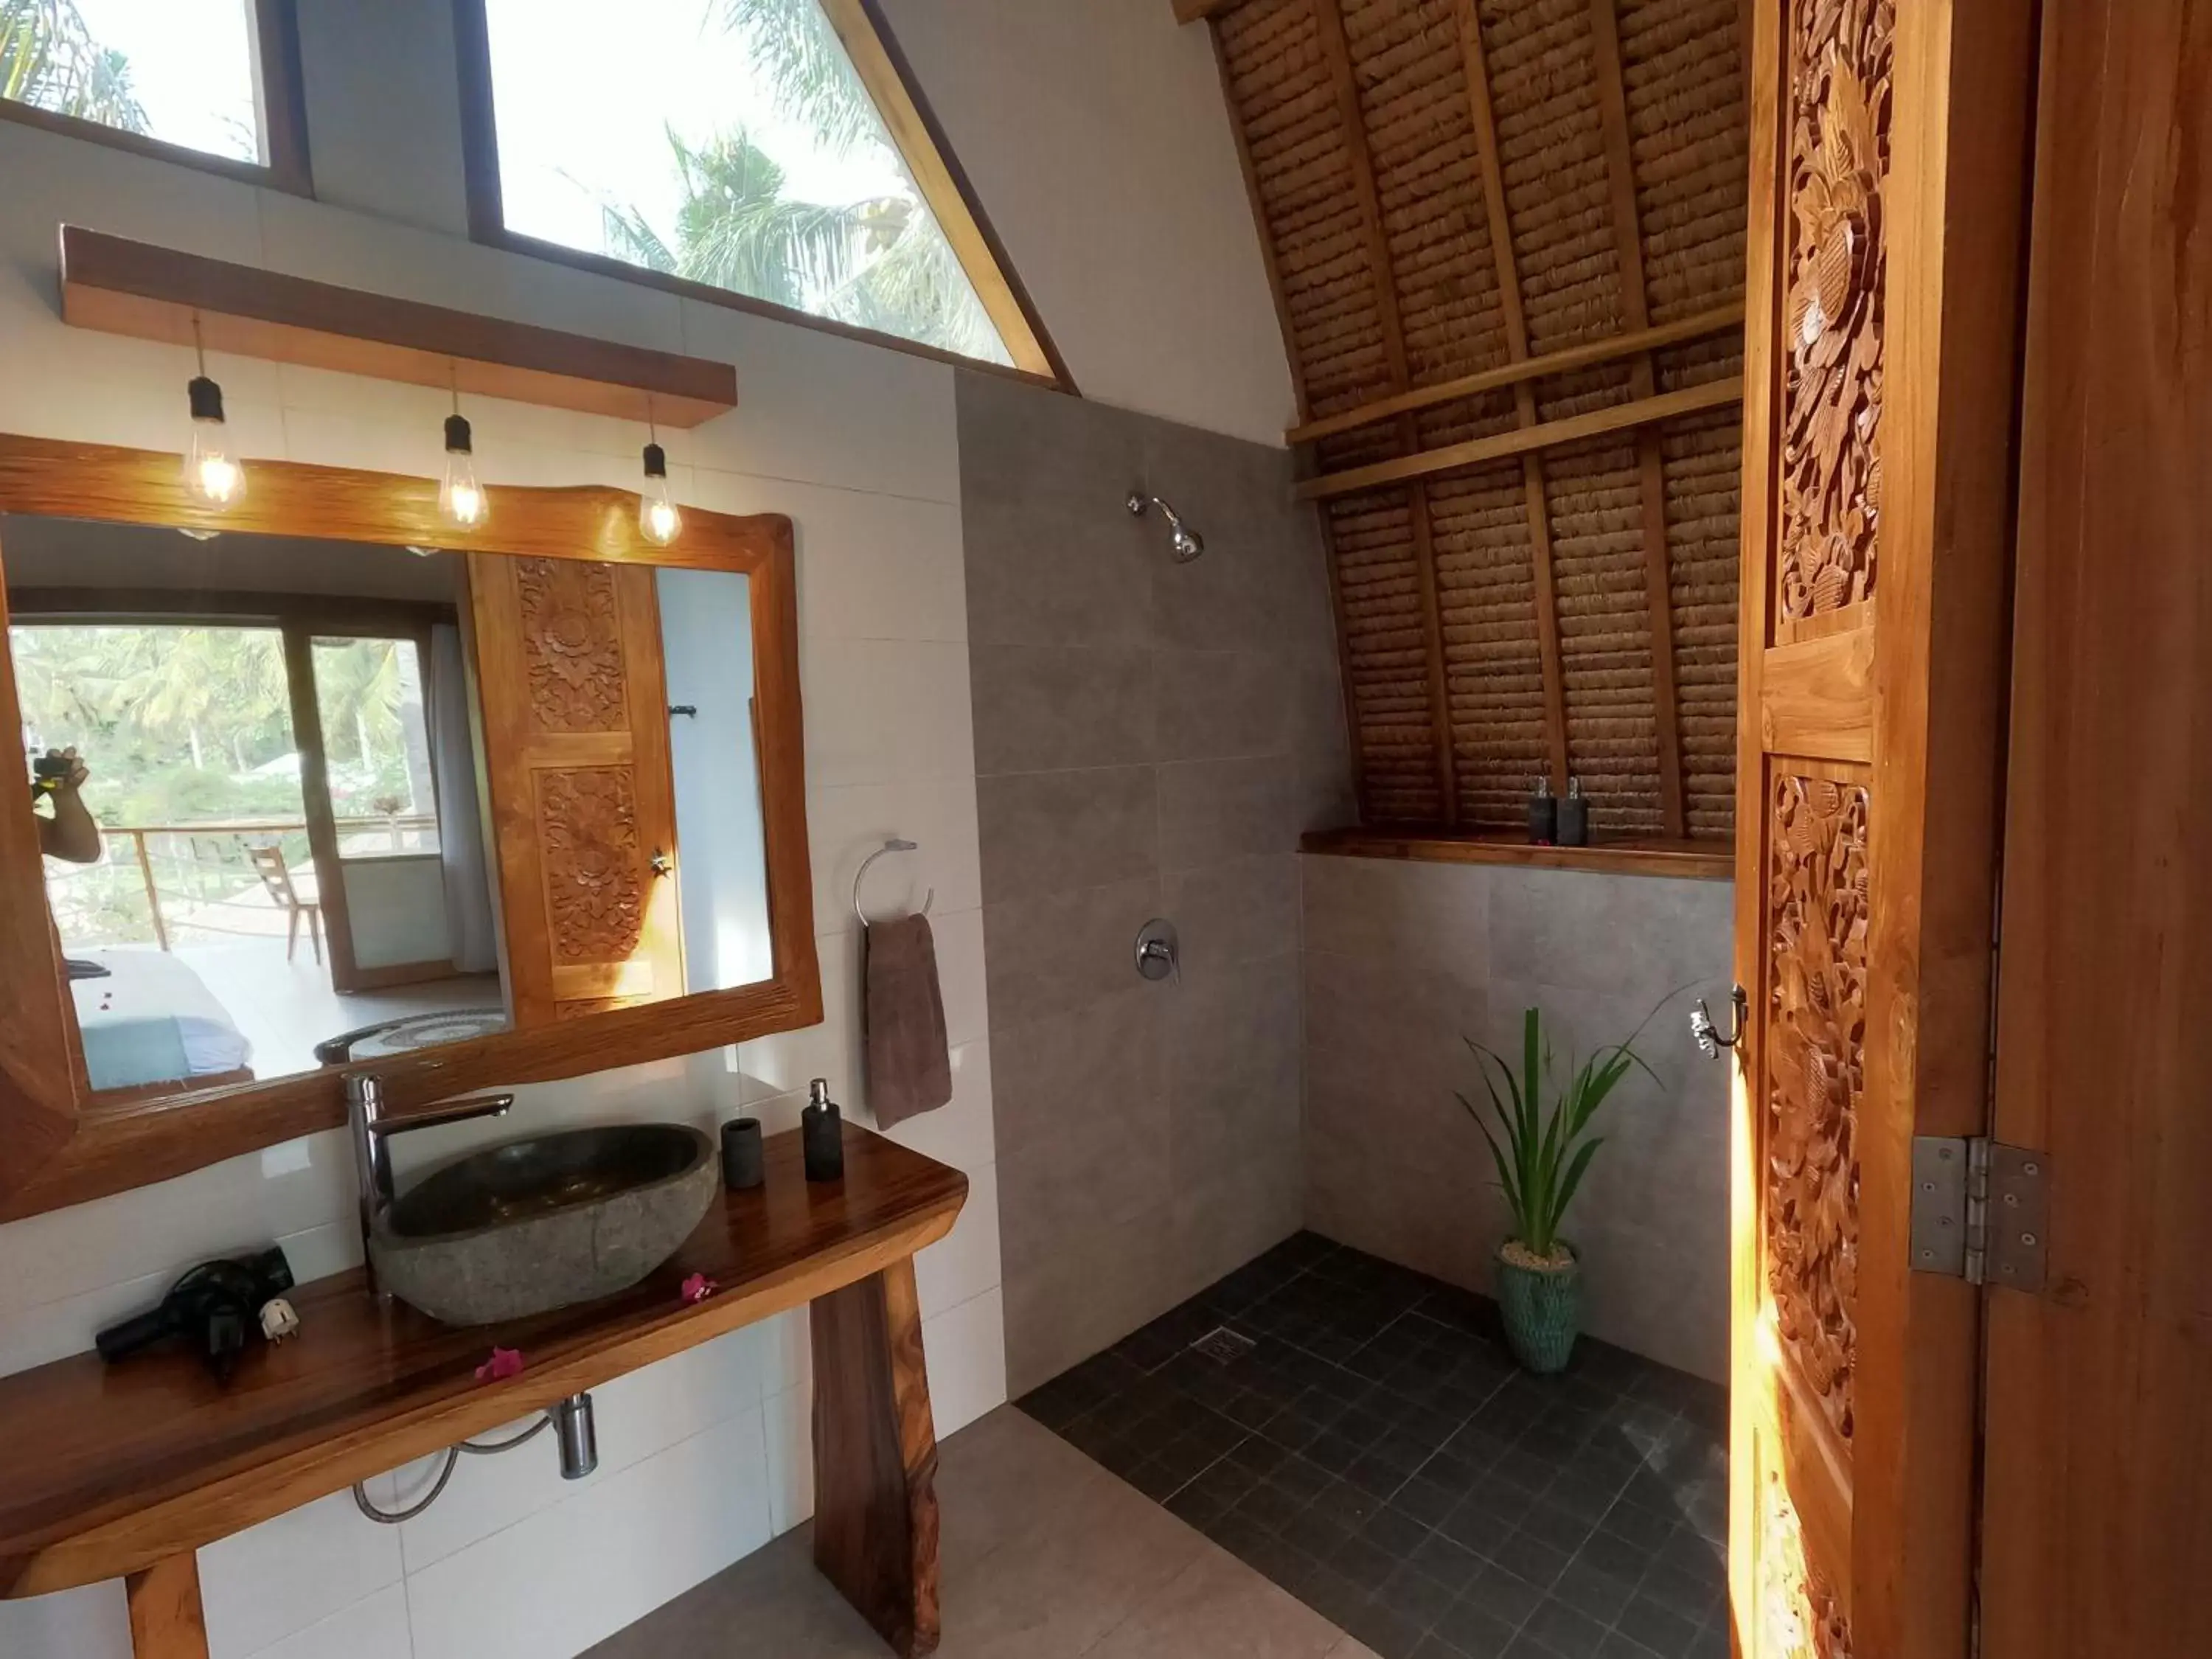 Bathroom in Coco Cabana